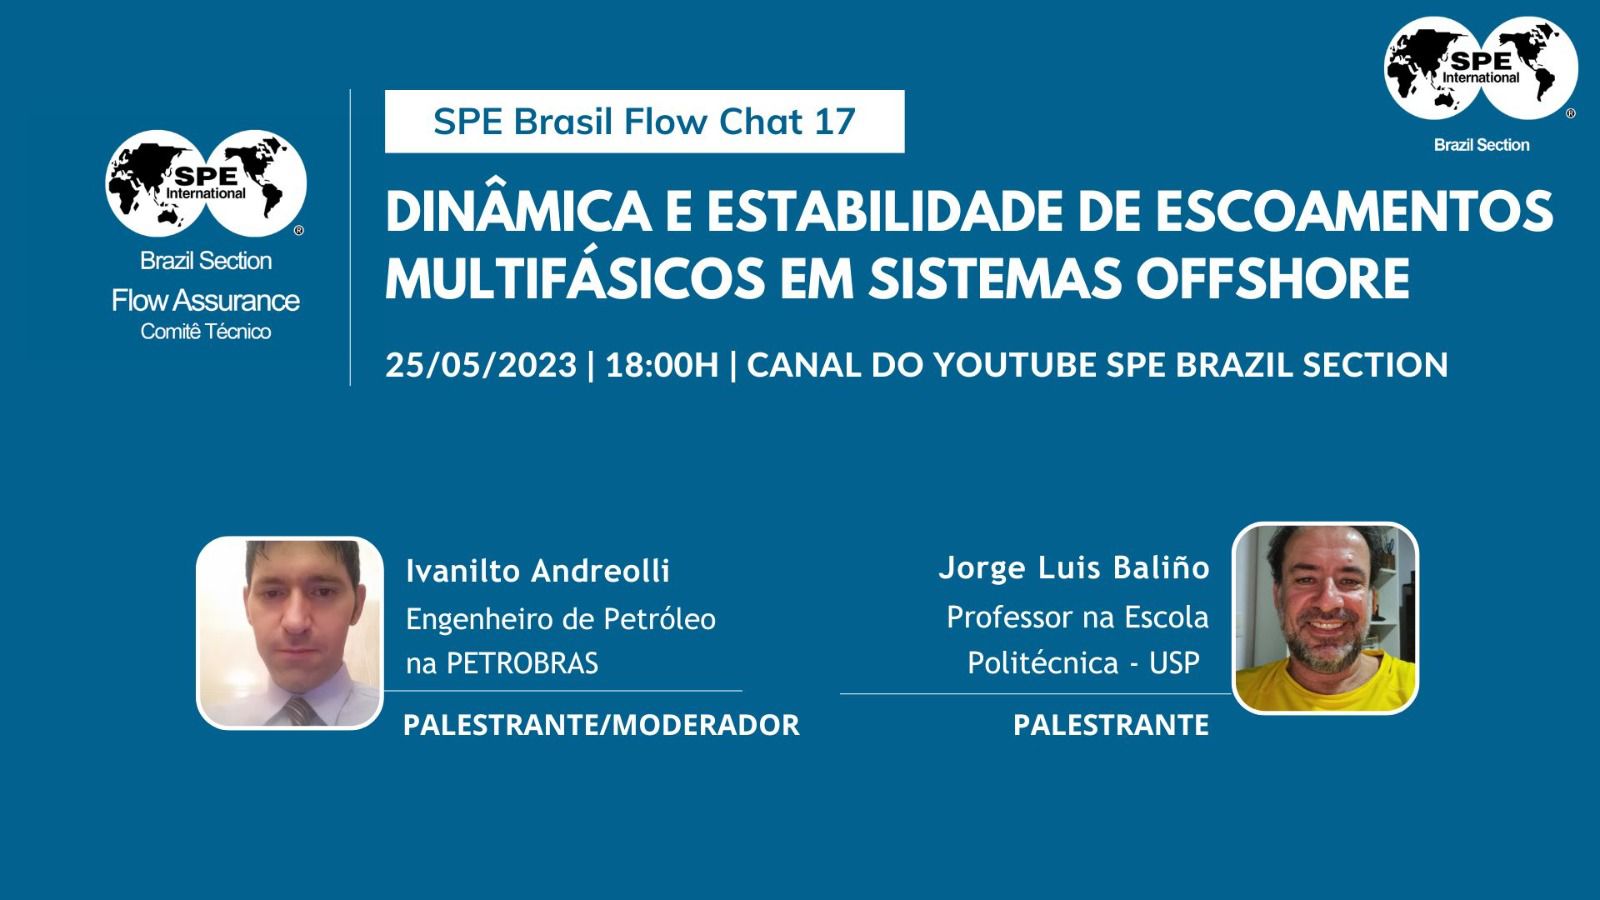 SPE Brazil Flow Chat – ” Dinâmica e Estabilidade de Escoamento Multifásicos em Sistemas Offshore”